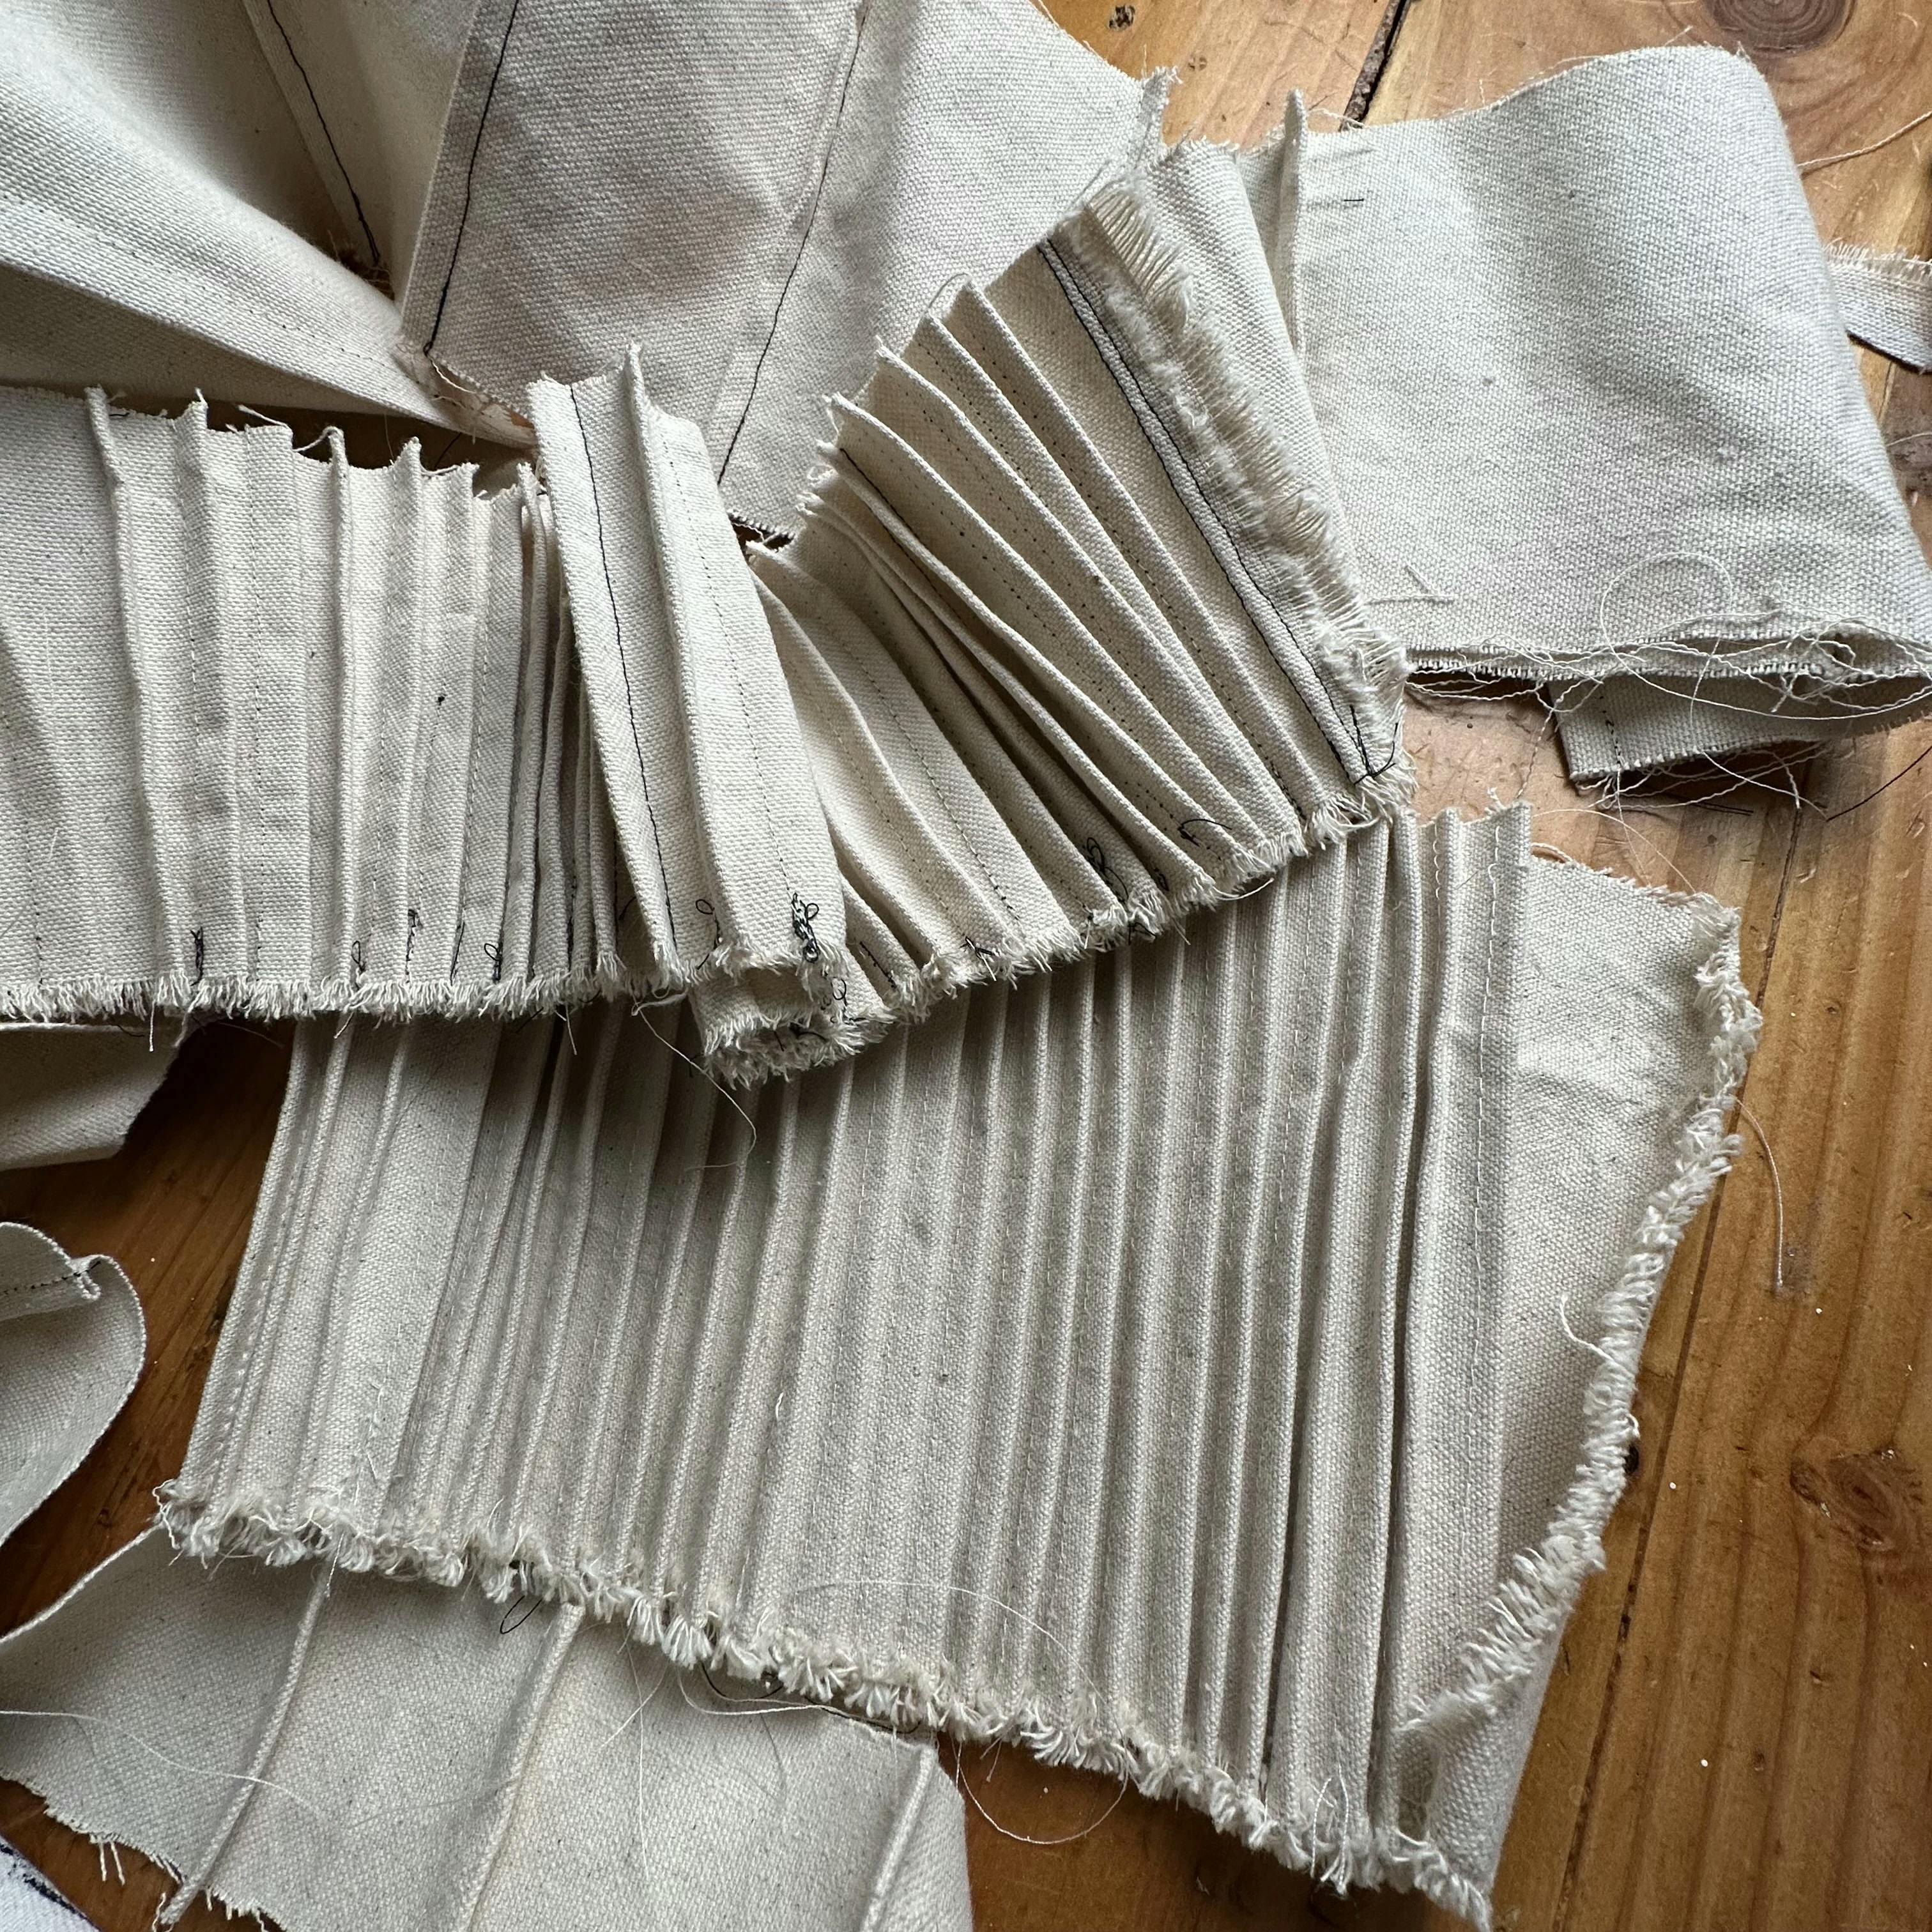 Scraps of sewn fabric in artist Nicole Anastas' studio.